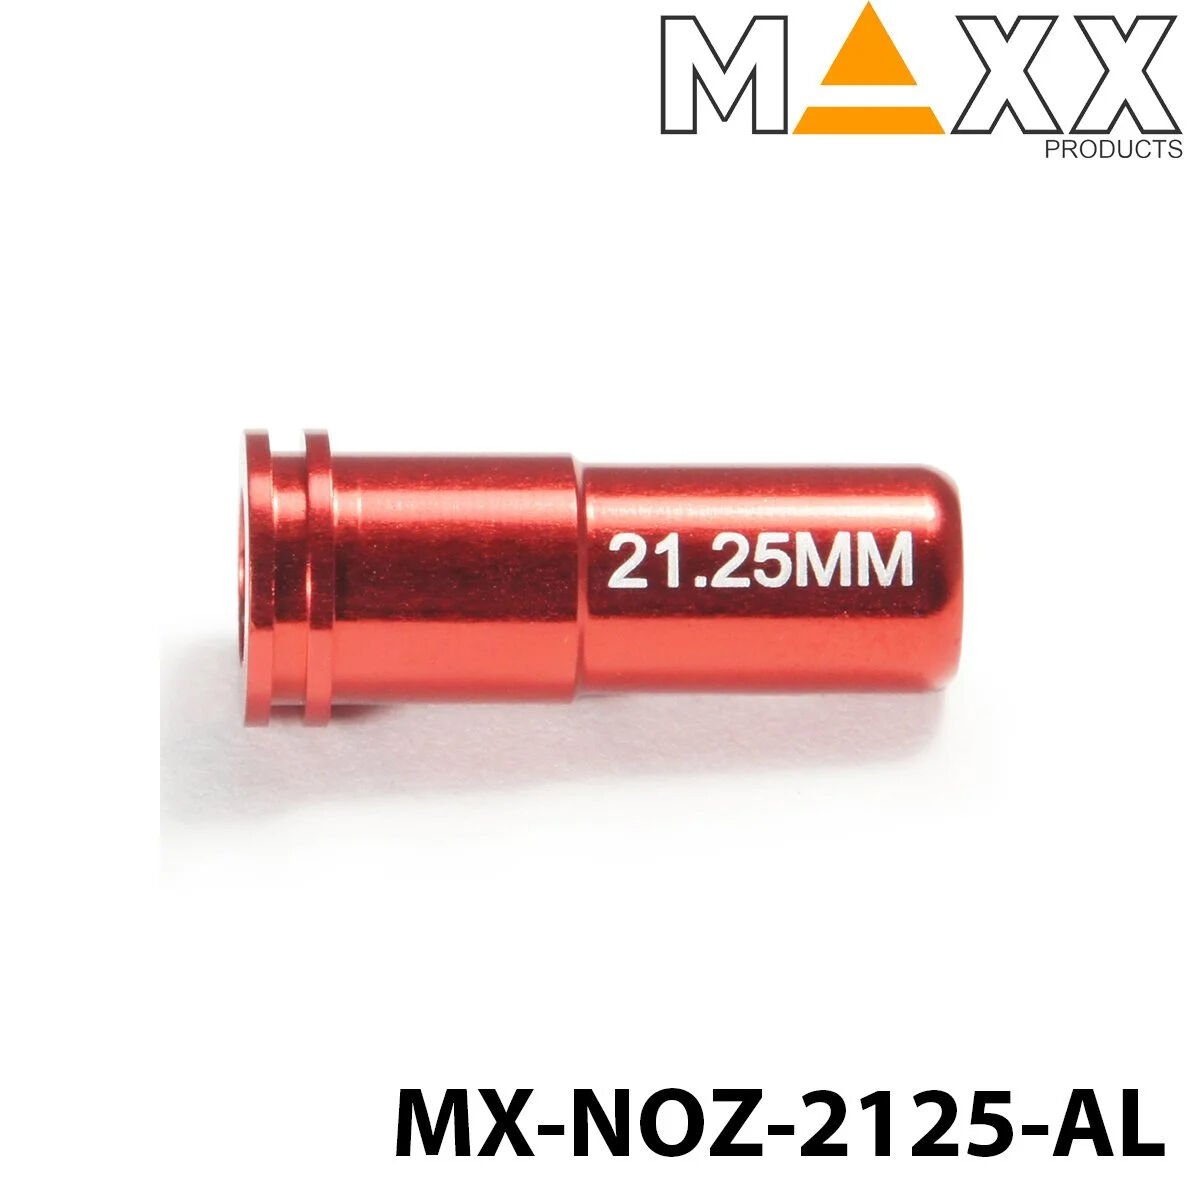 Maxx Model Nozzle 21.25 MX-NOZ2125AL